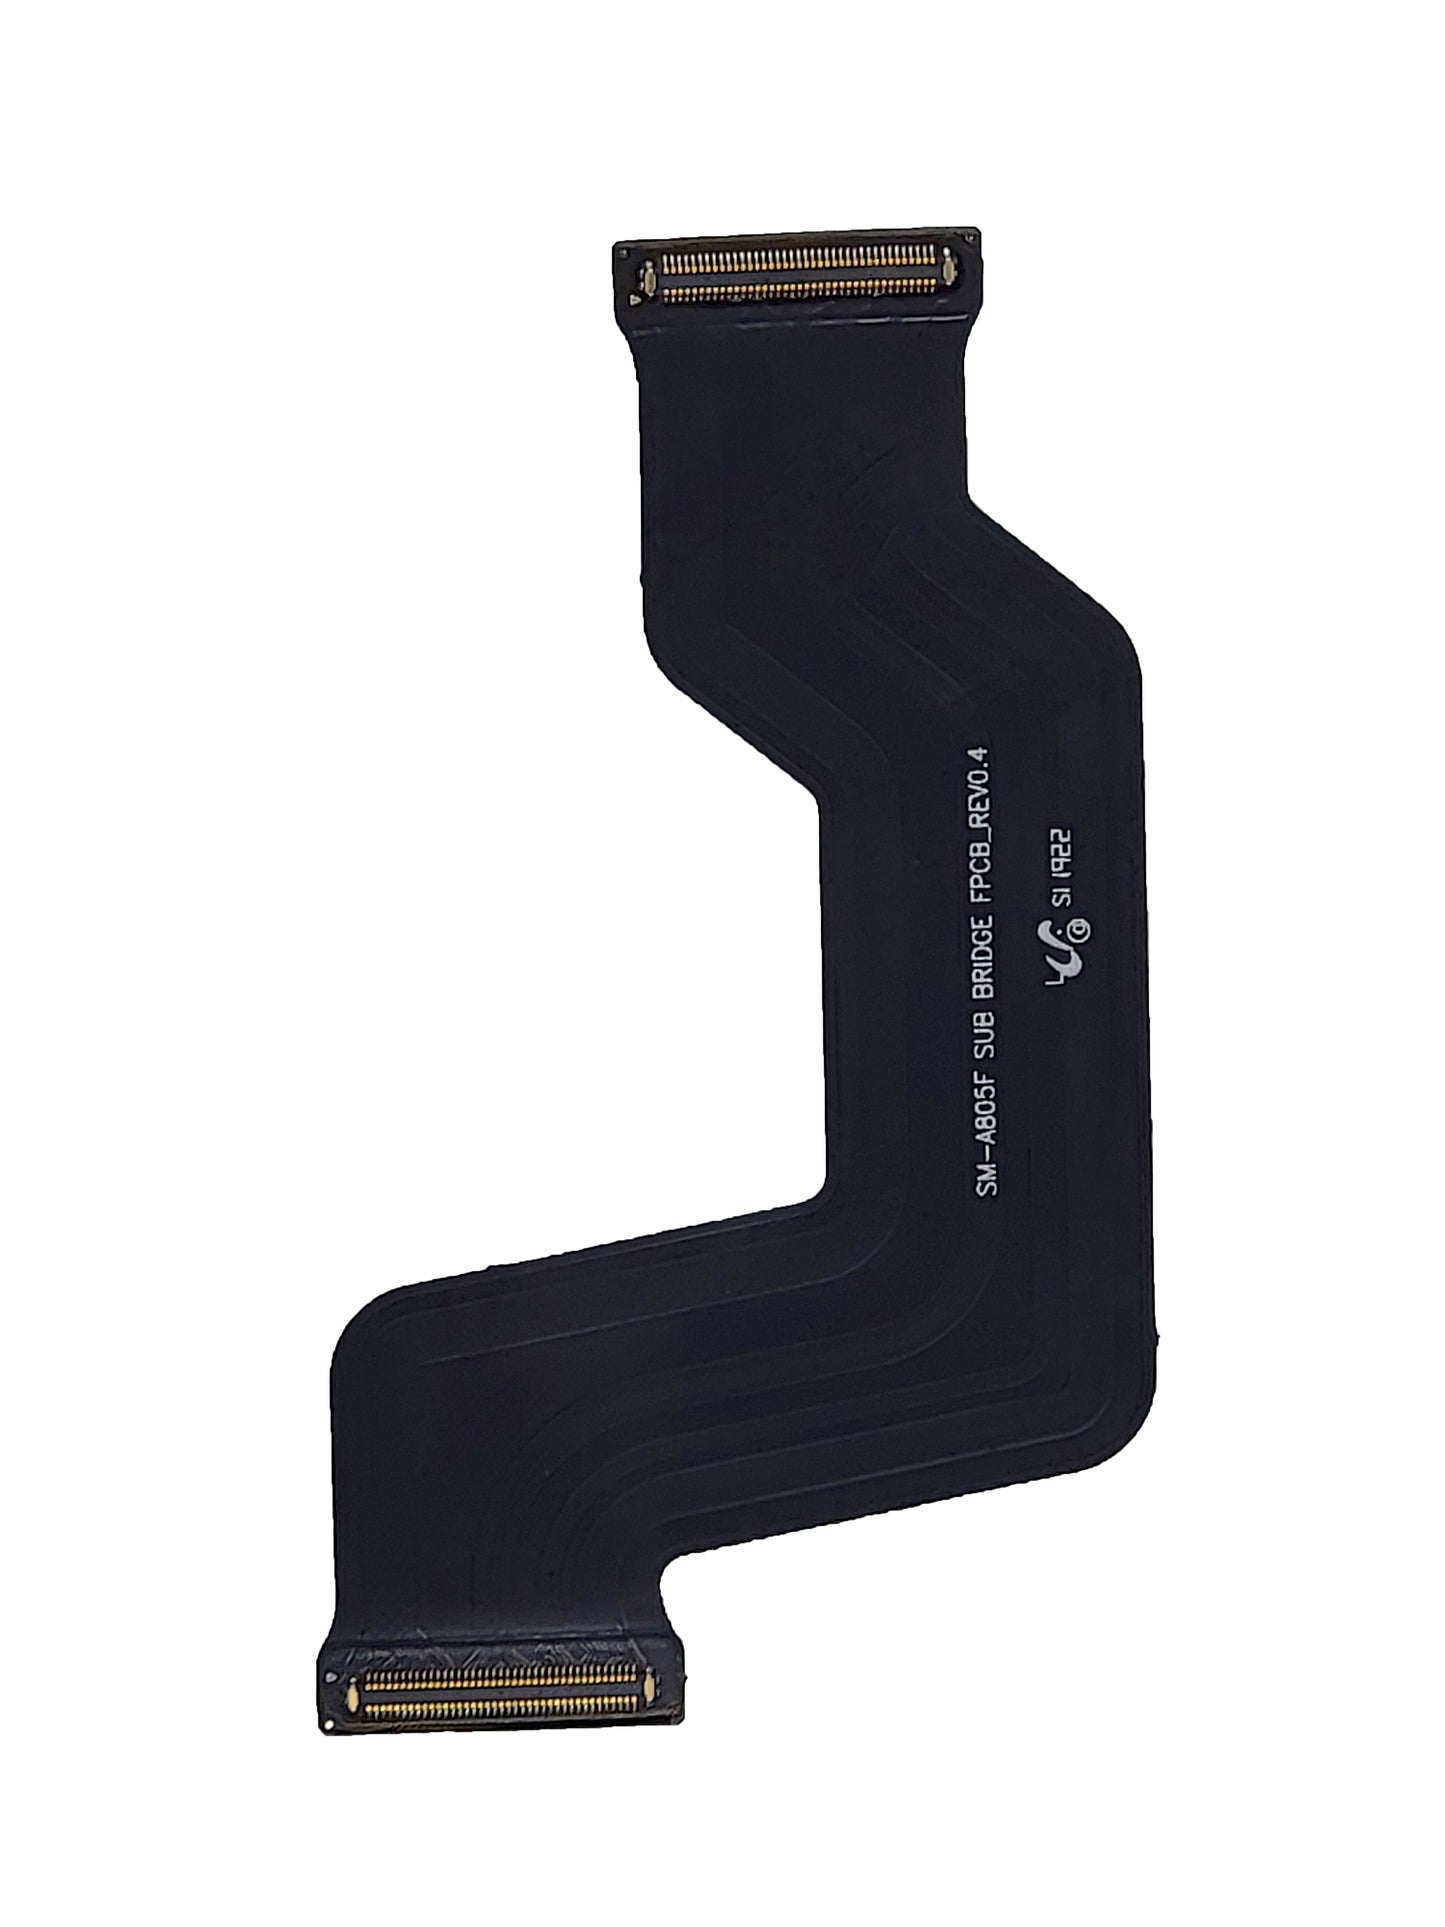 SGA A80 Main Board Flex Cable